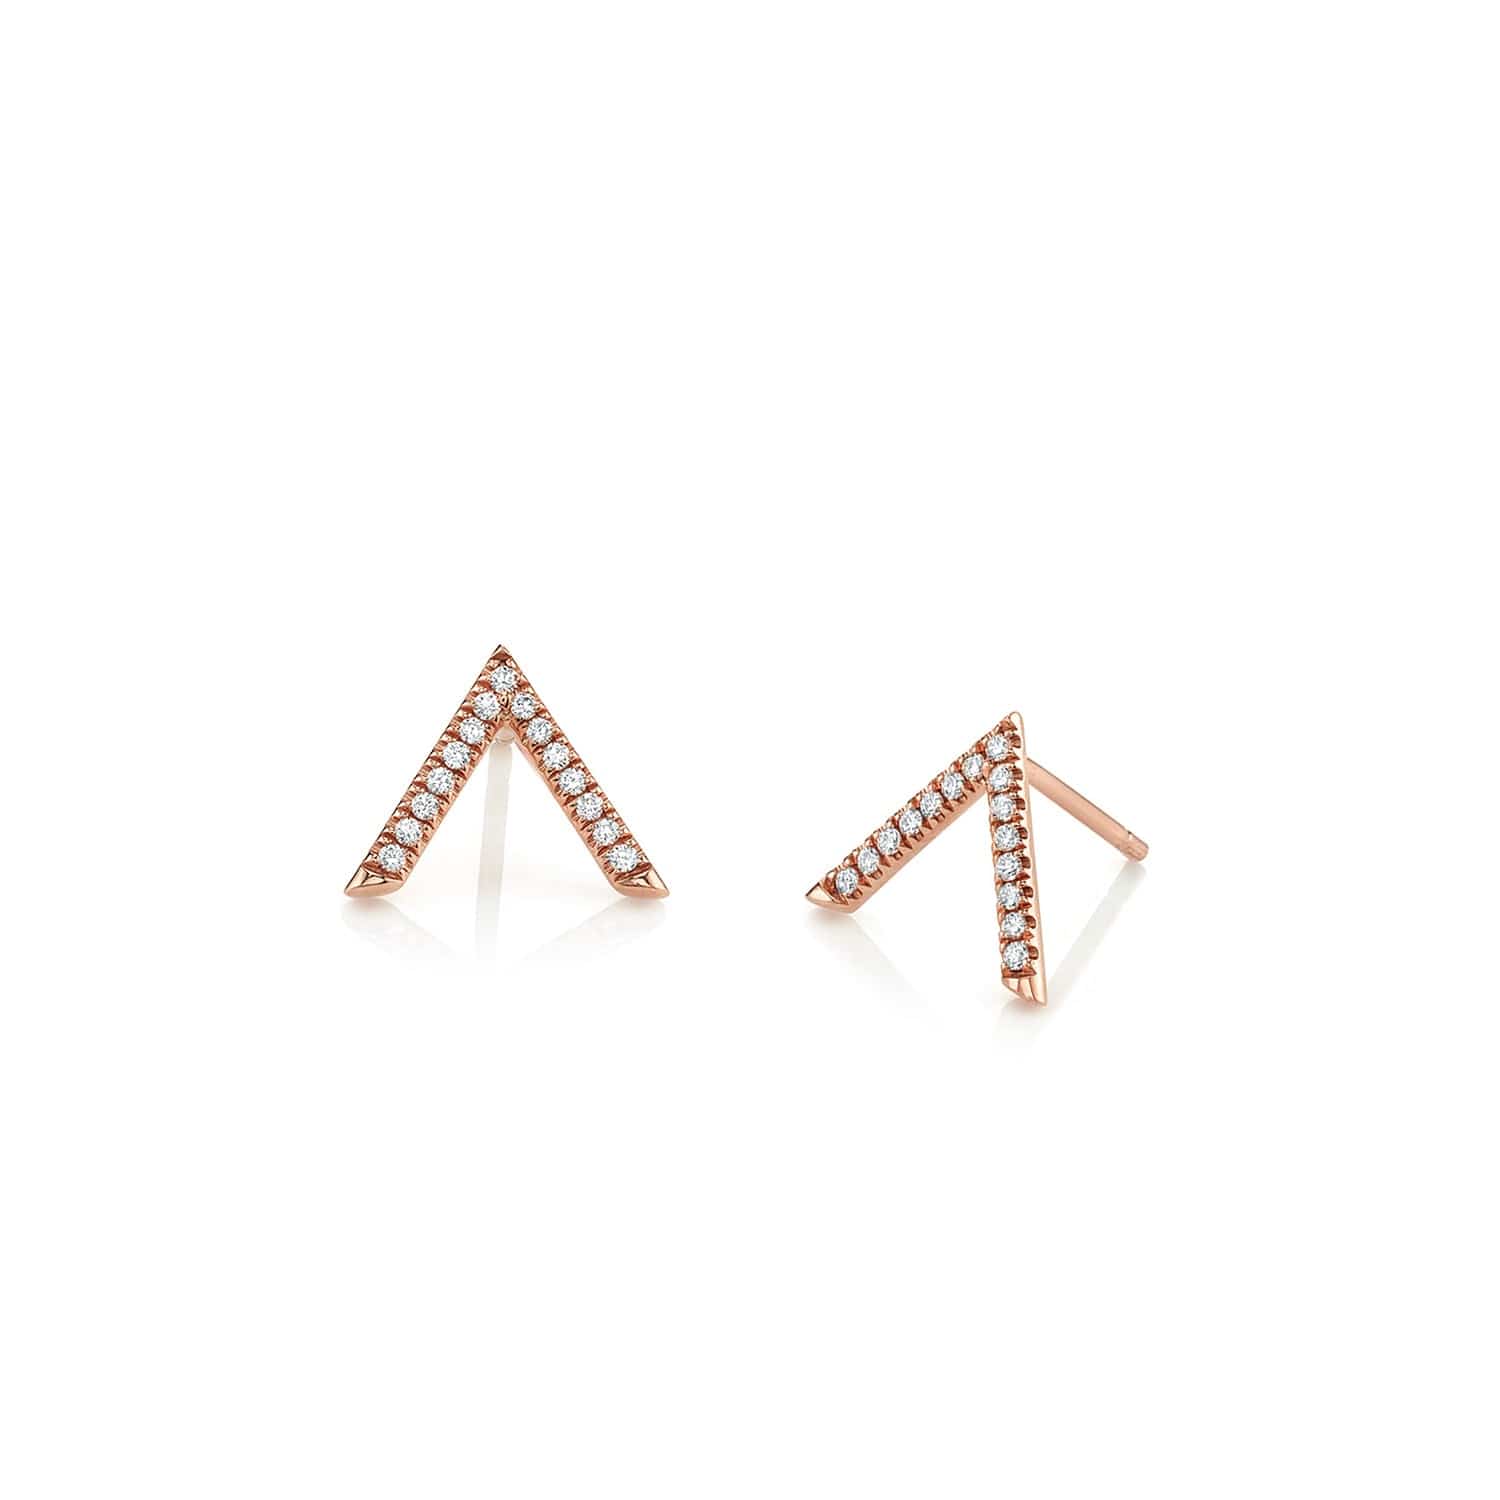 MICHAEL M Earrings 14K Rose Gold Single V Diamond Stud Earrings ER267RG